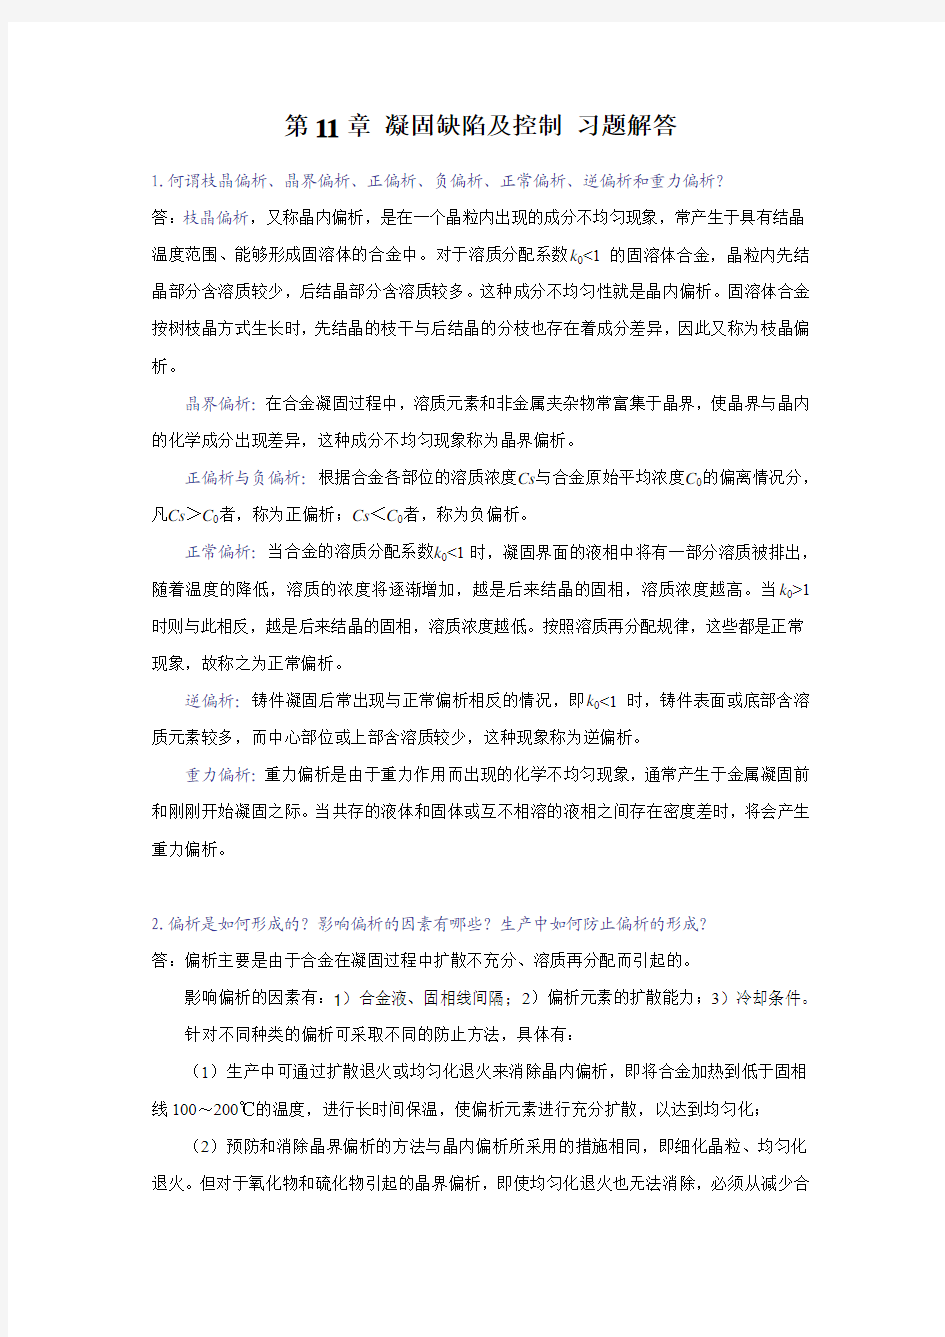 《材料成型基本原理》刘全坤版 第11章答案